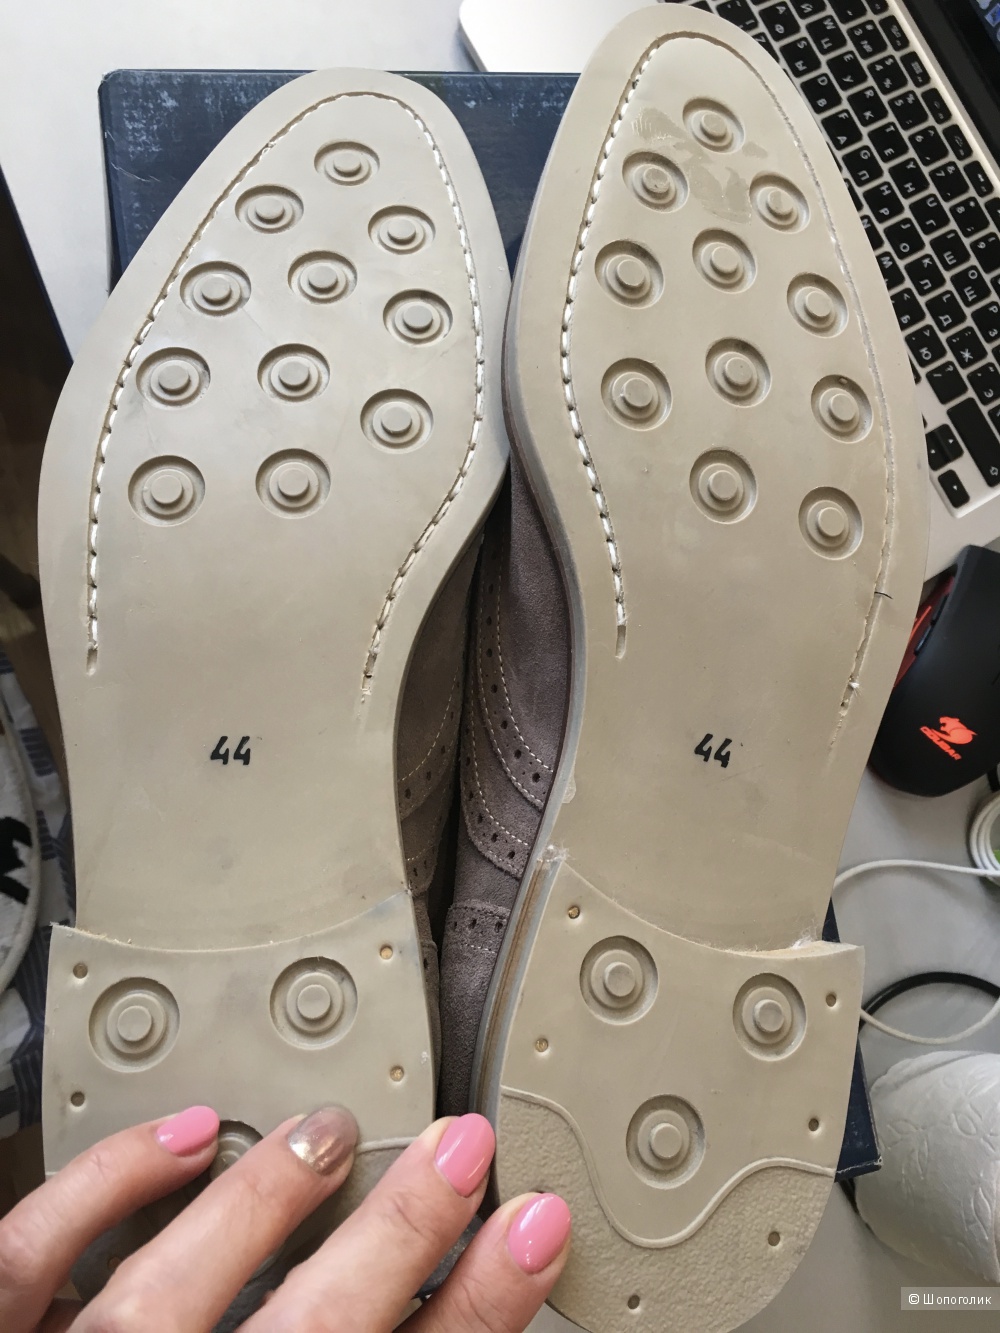 Мужские туфли ROCHAS, 44 (Европейский Размер). 31 см по стельке. Голубиный серый